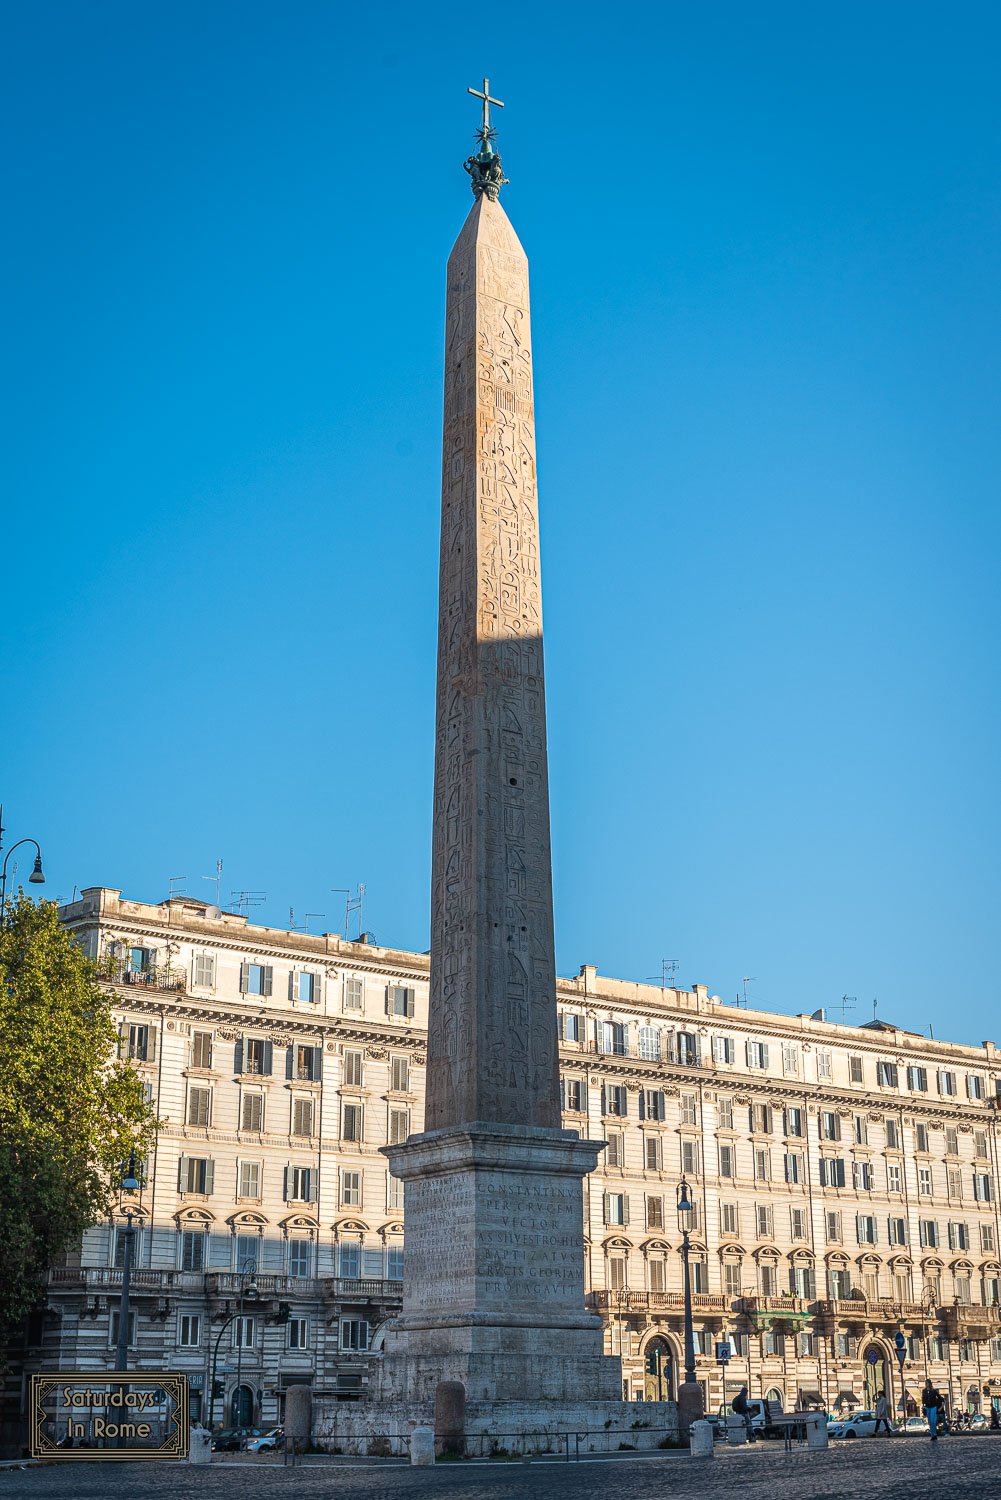 Obelisks In Rome - The Lateran